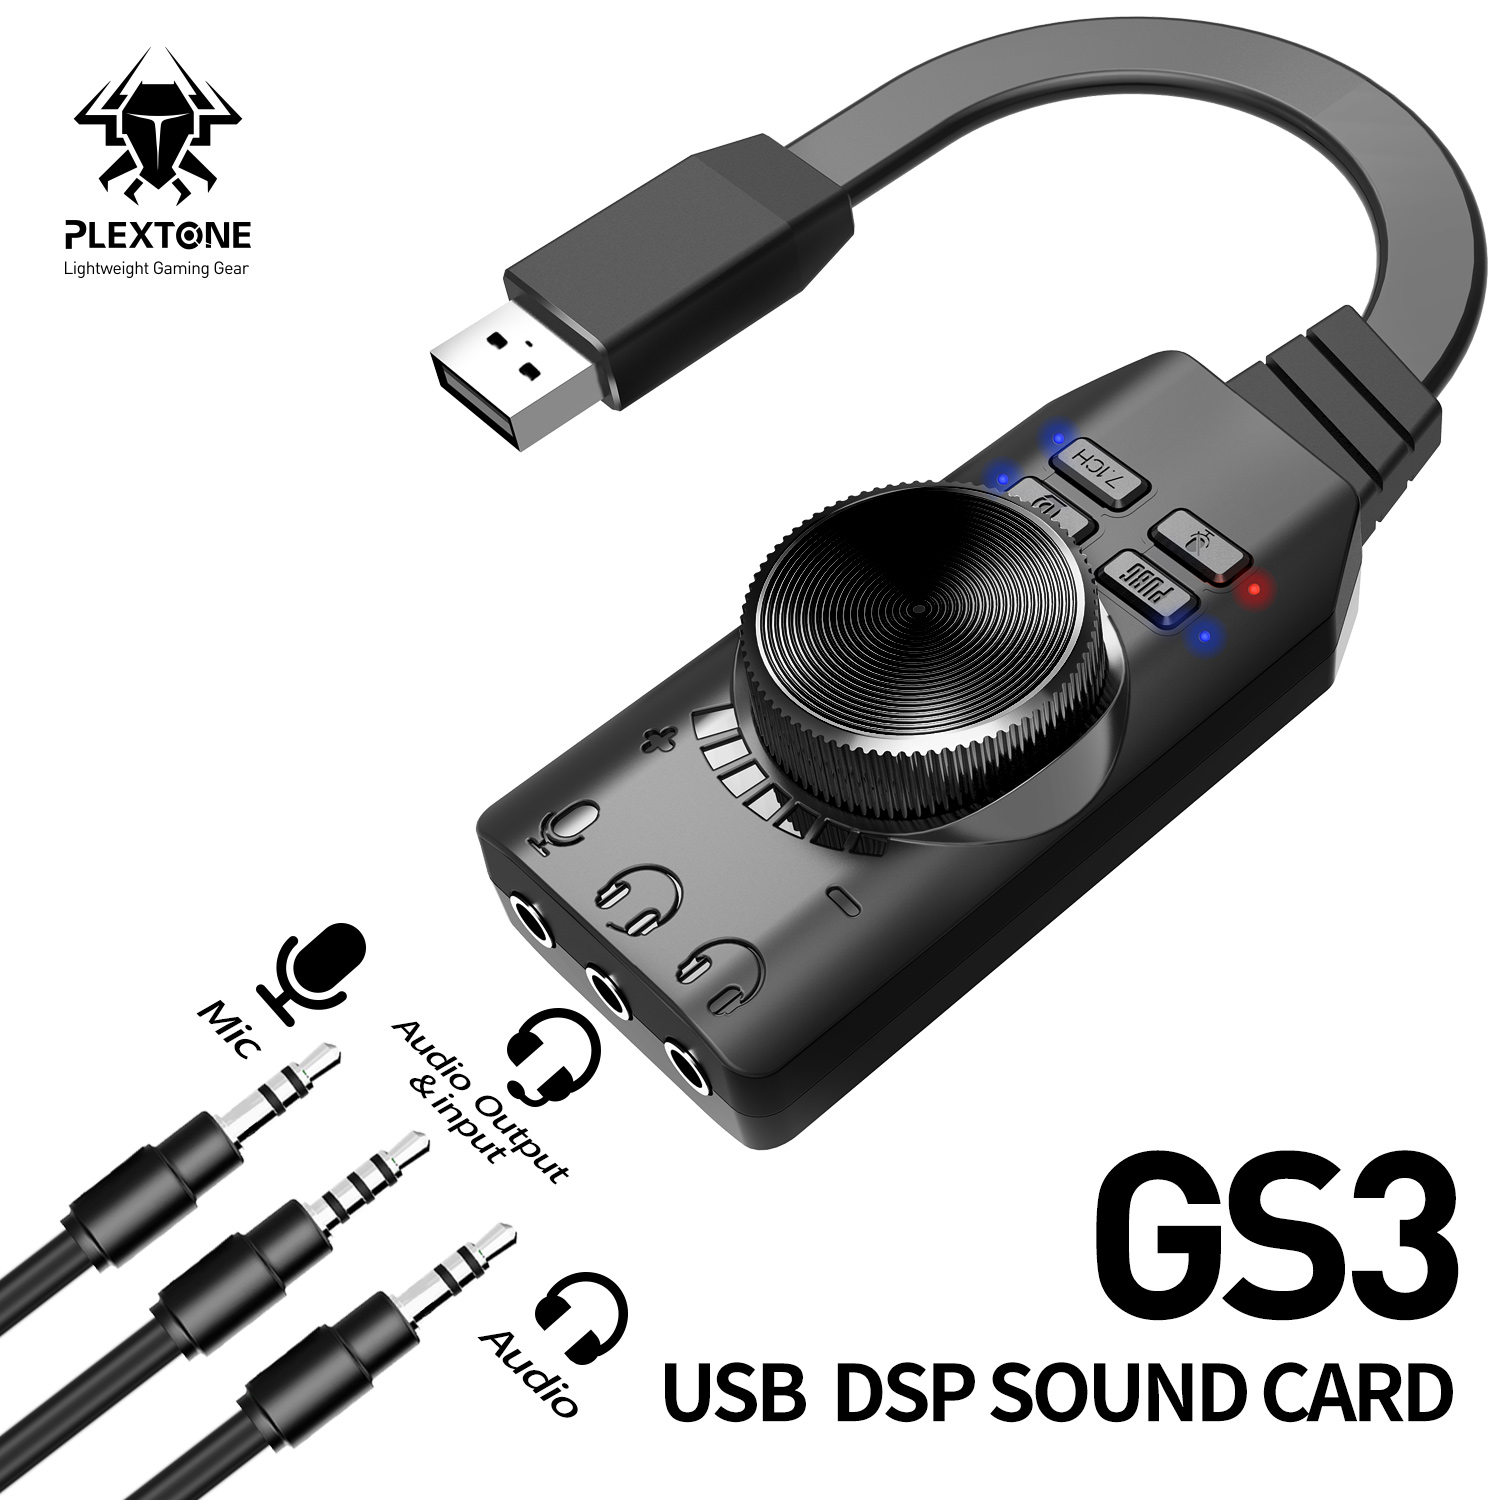 Sound card âm thanh 7.1 cho máy tính PC chuyên game GS3 - Hàng Chính hãng